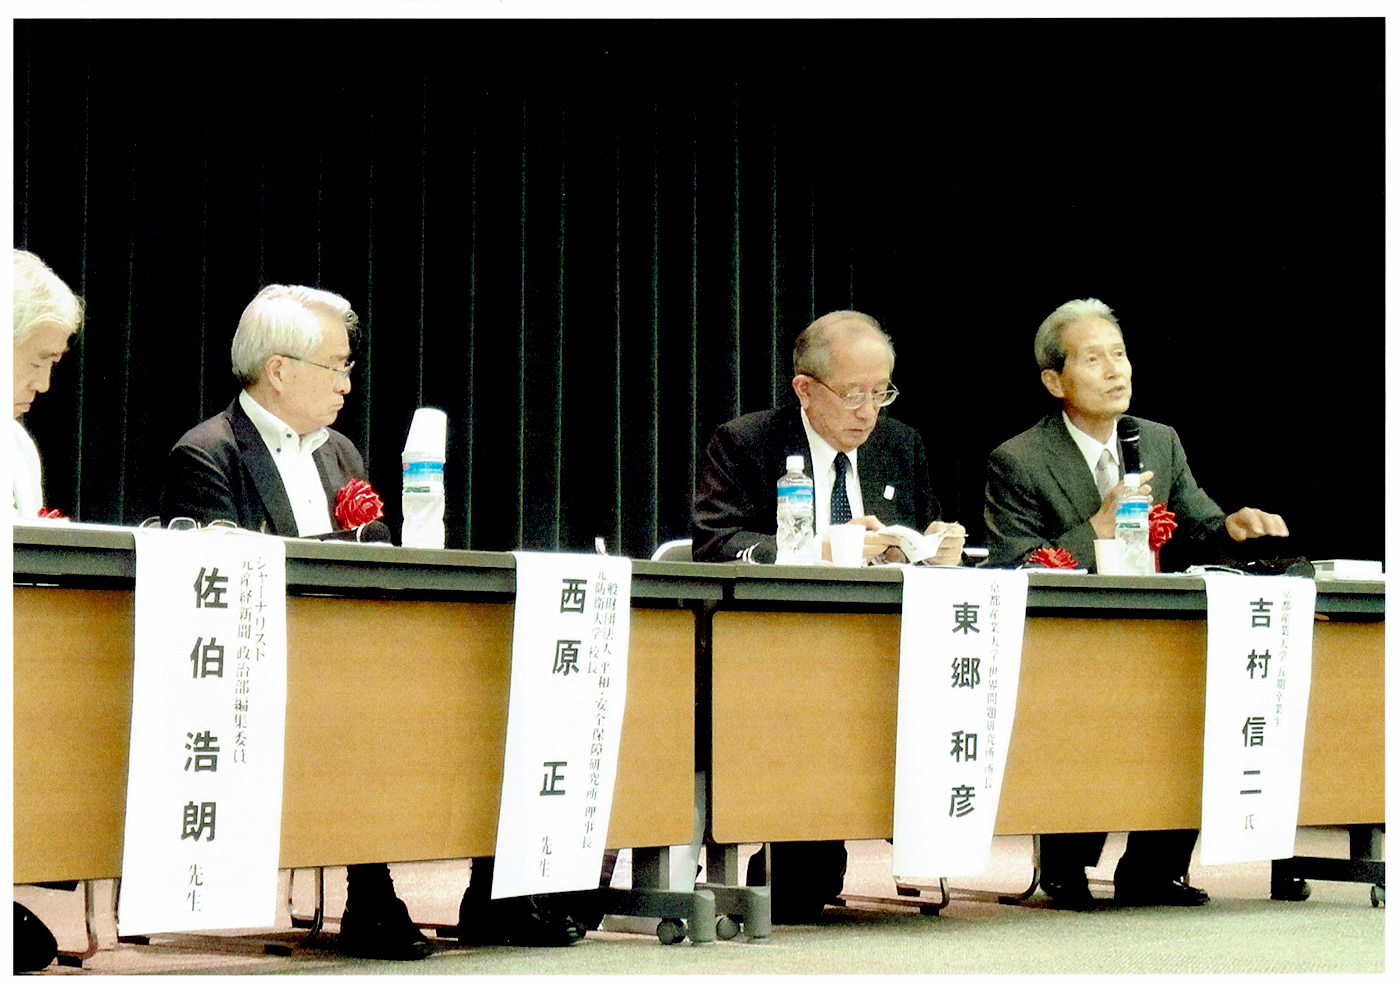 京都産業大学創立50周年記念シンポジウム 若泉 敬先生の再発見-沖縄返還交渉と日本の未来-